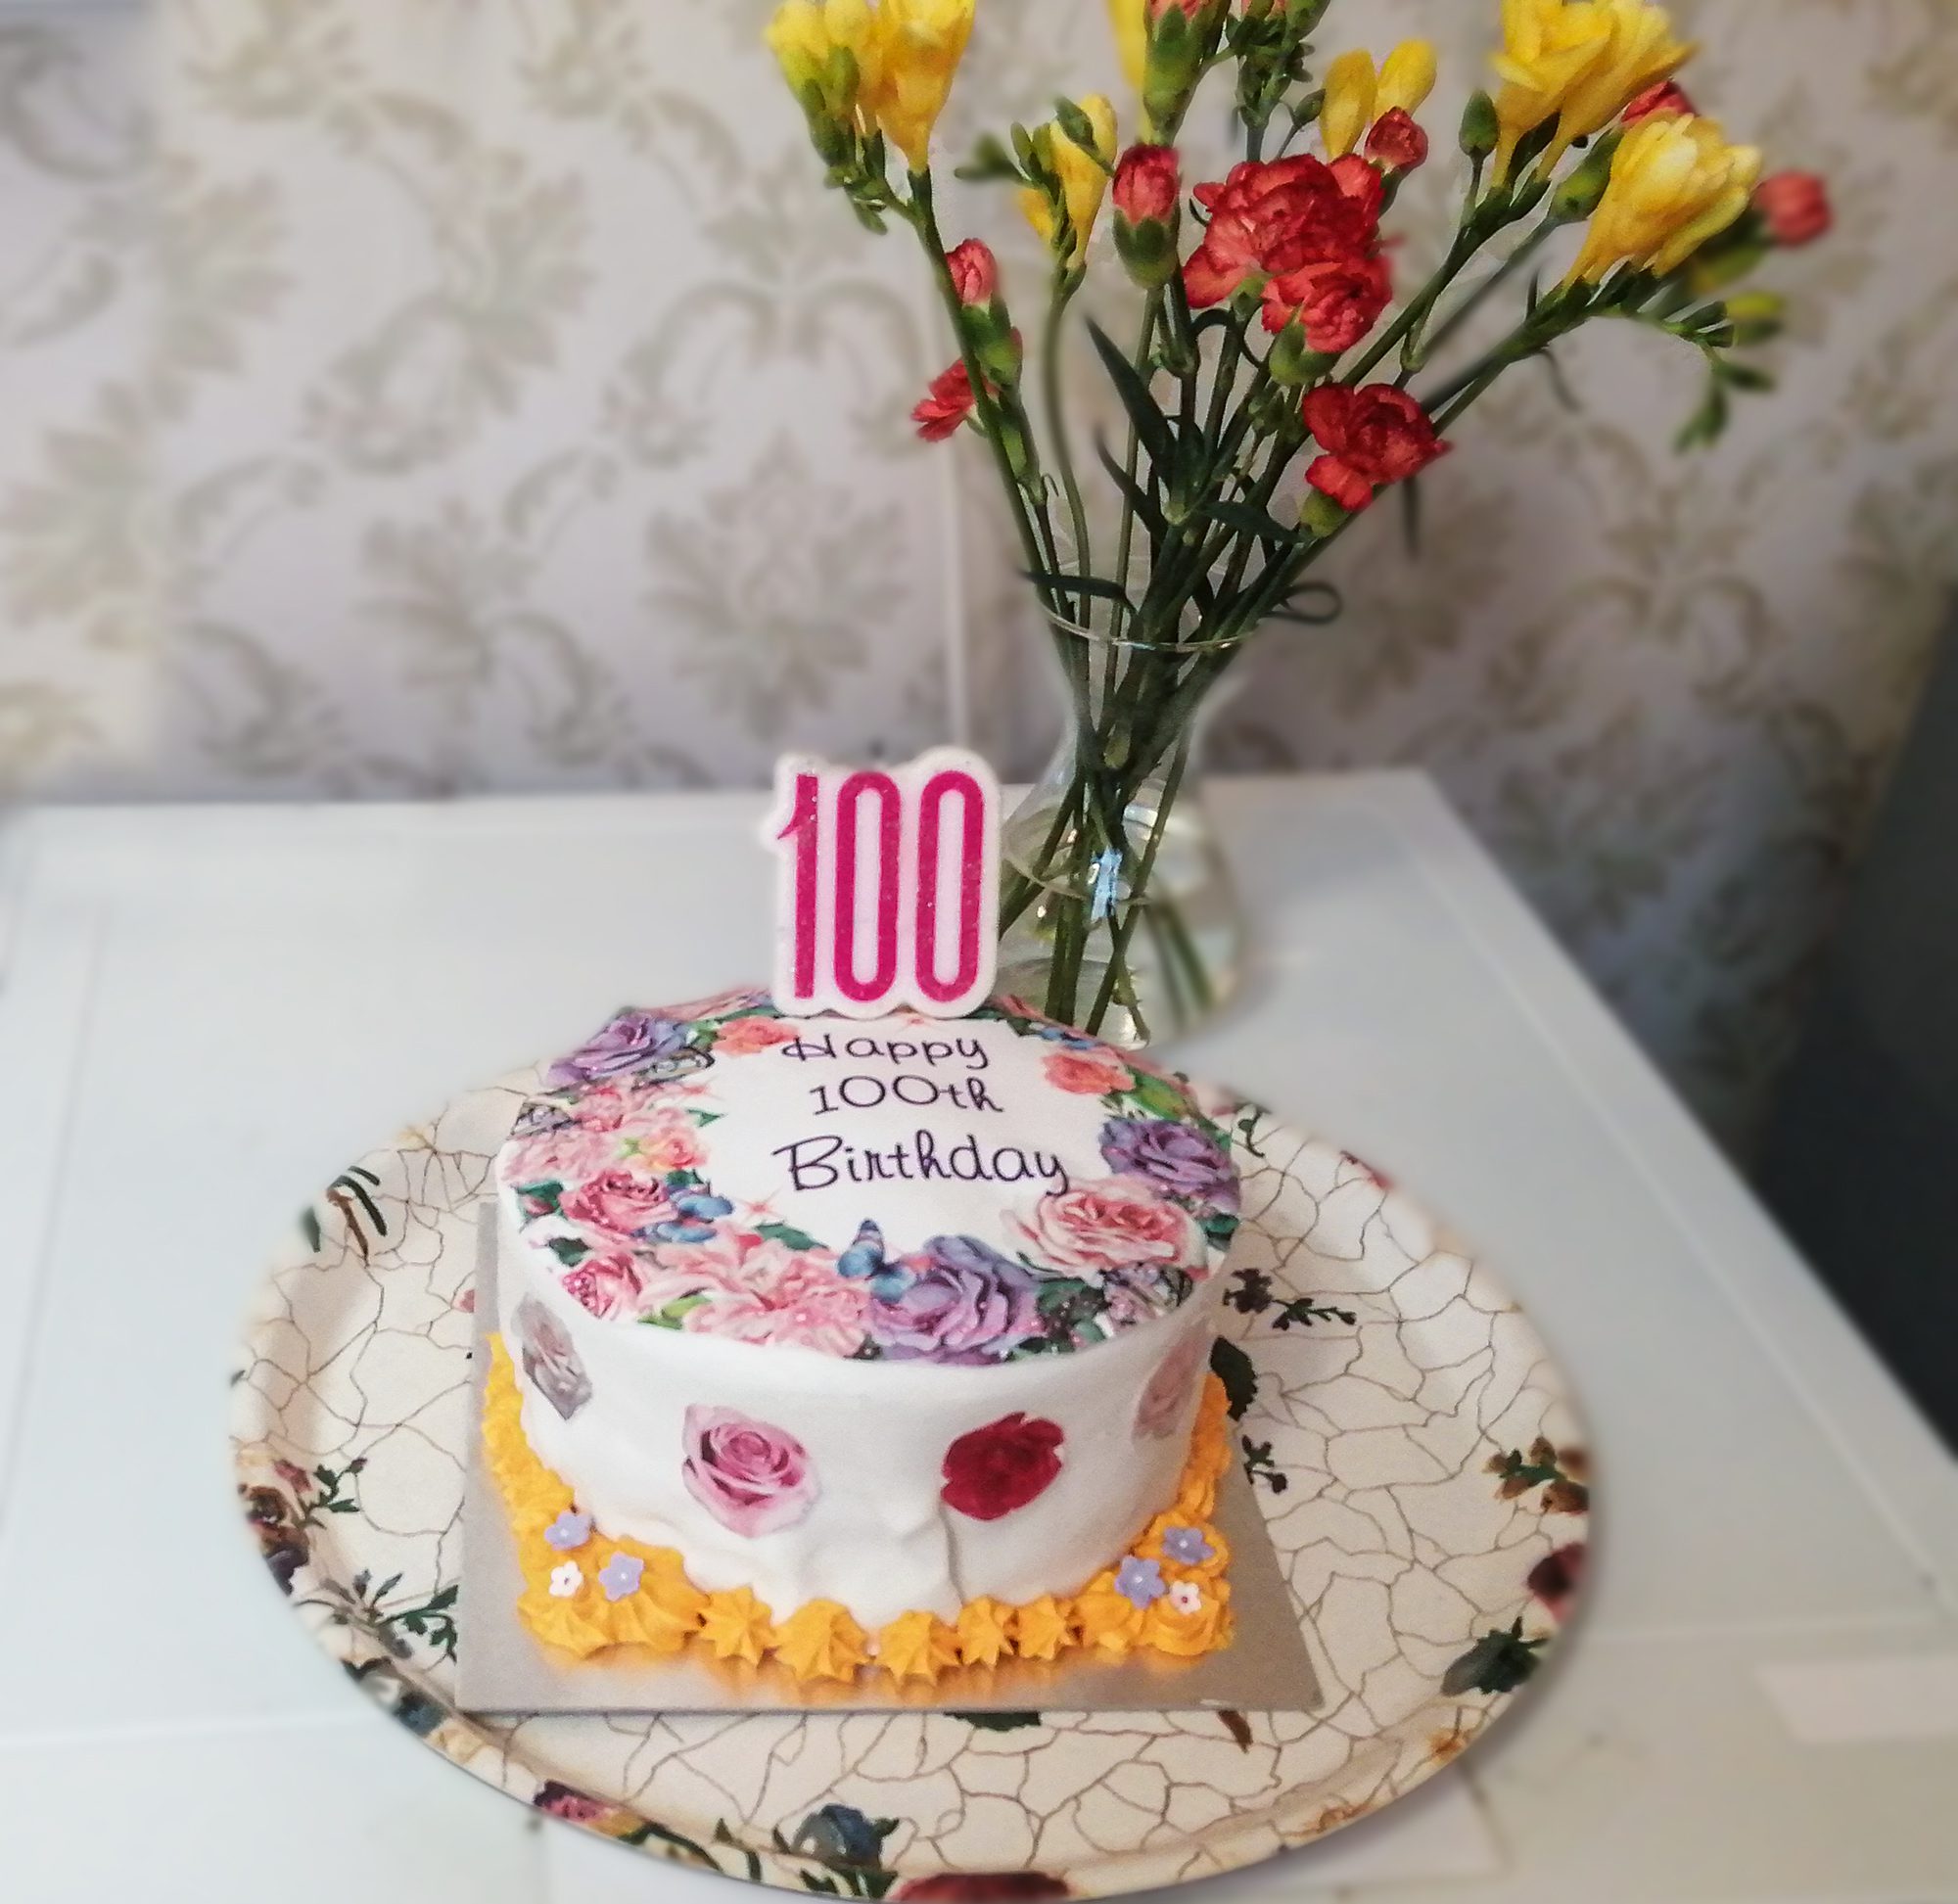 Rita's 100th birthday cake